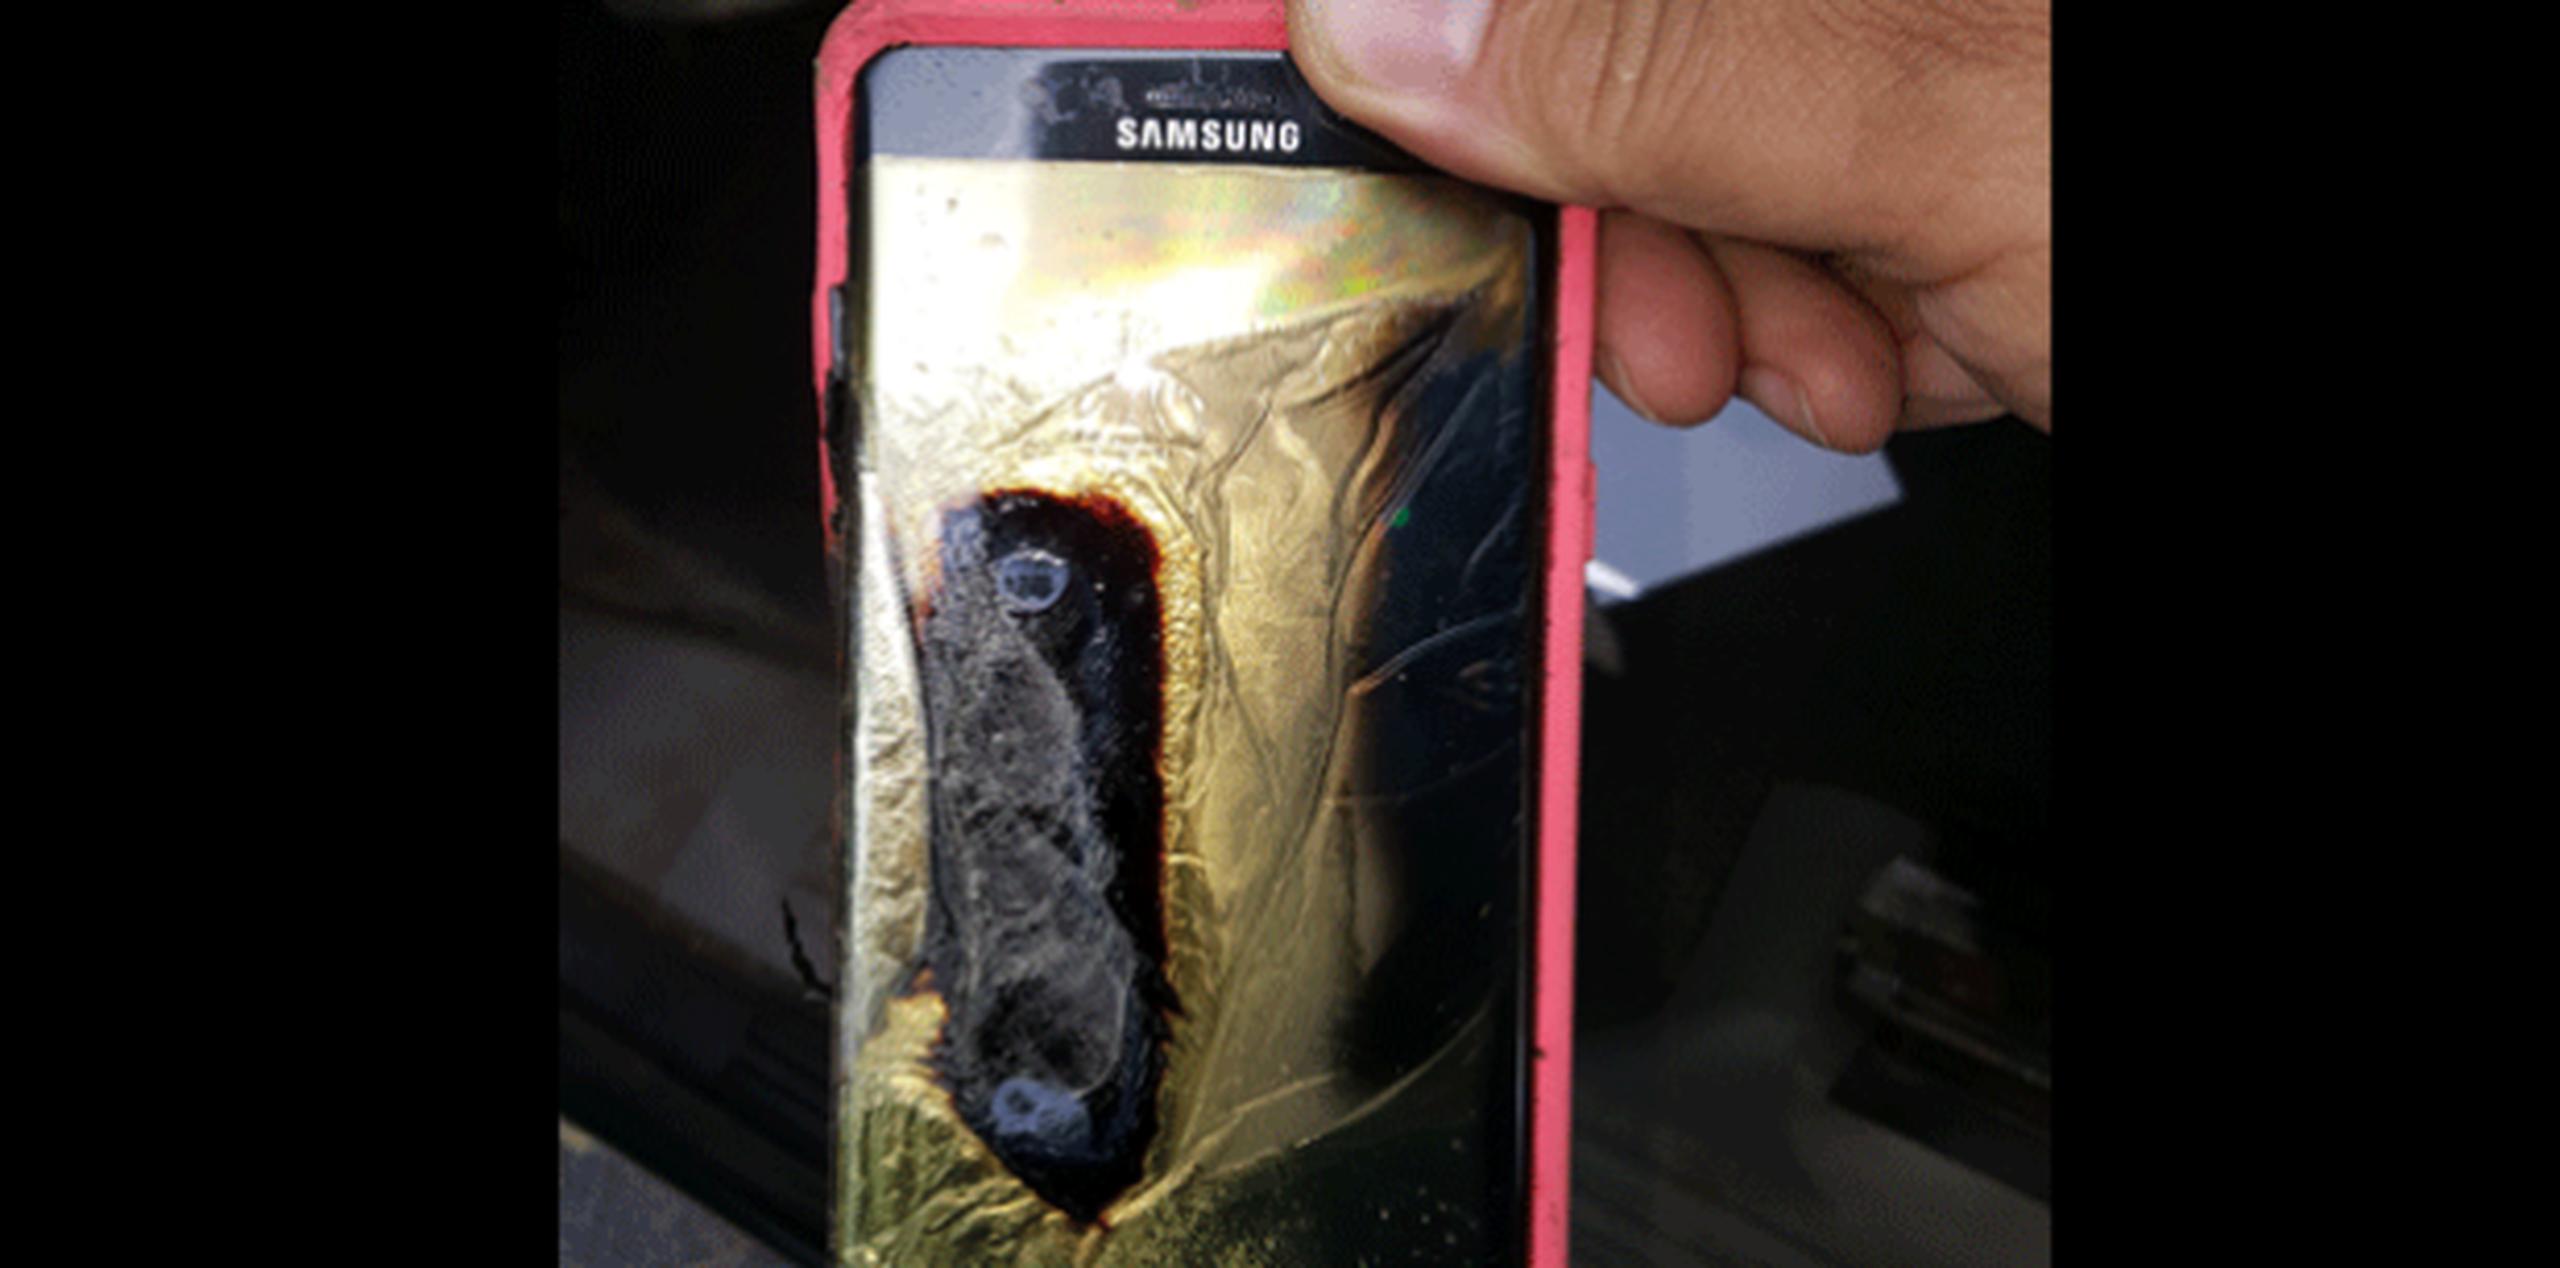 Según Prensa Asociada, Samsung y las autoridades estadounidenses investigan numerosas denuncias de fuegos y explosiones de estos dispositivos móviles.  (AP)